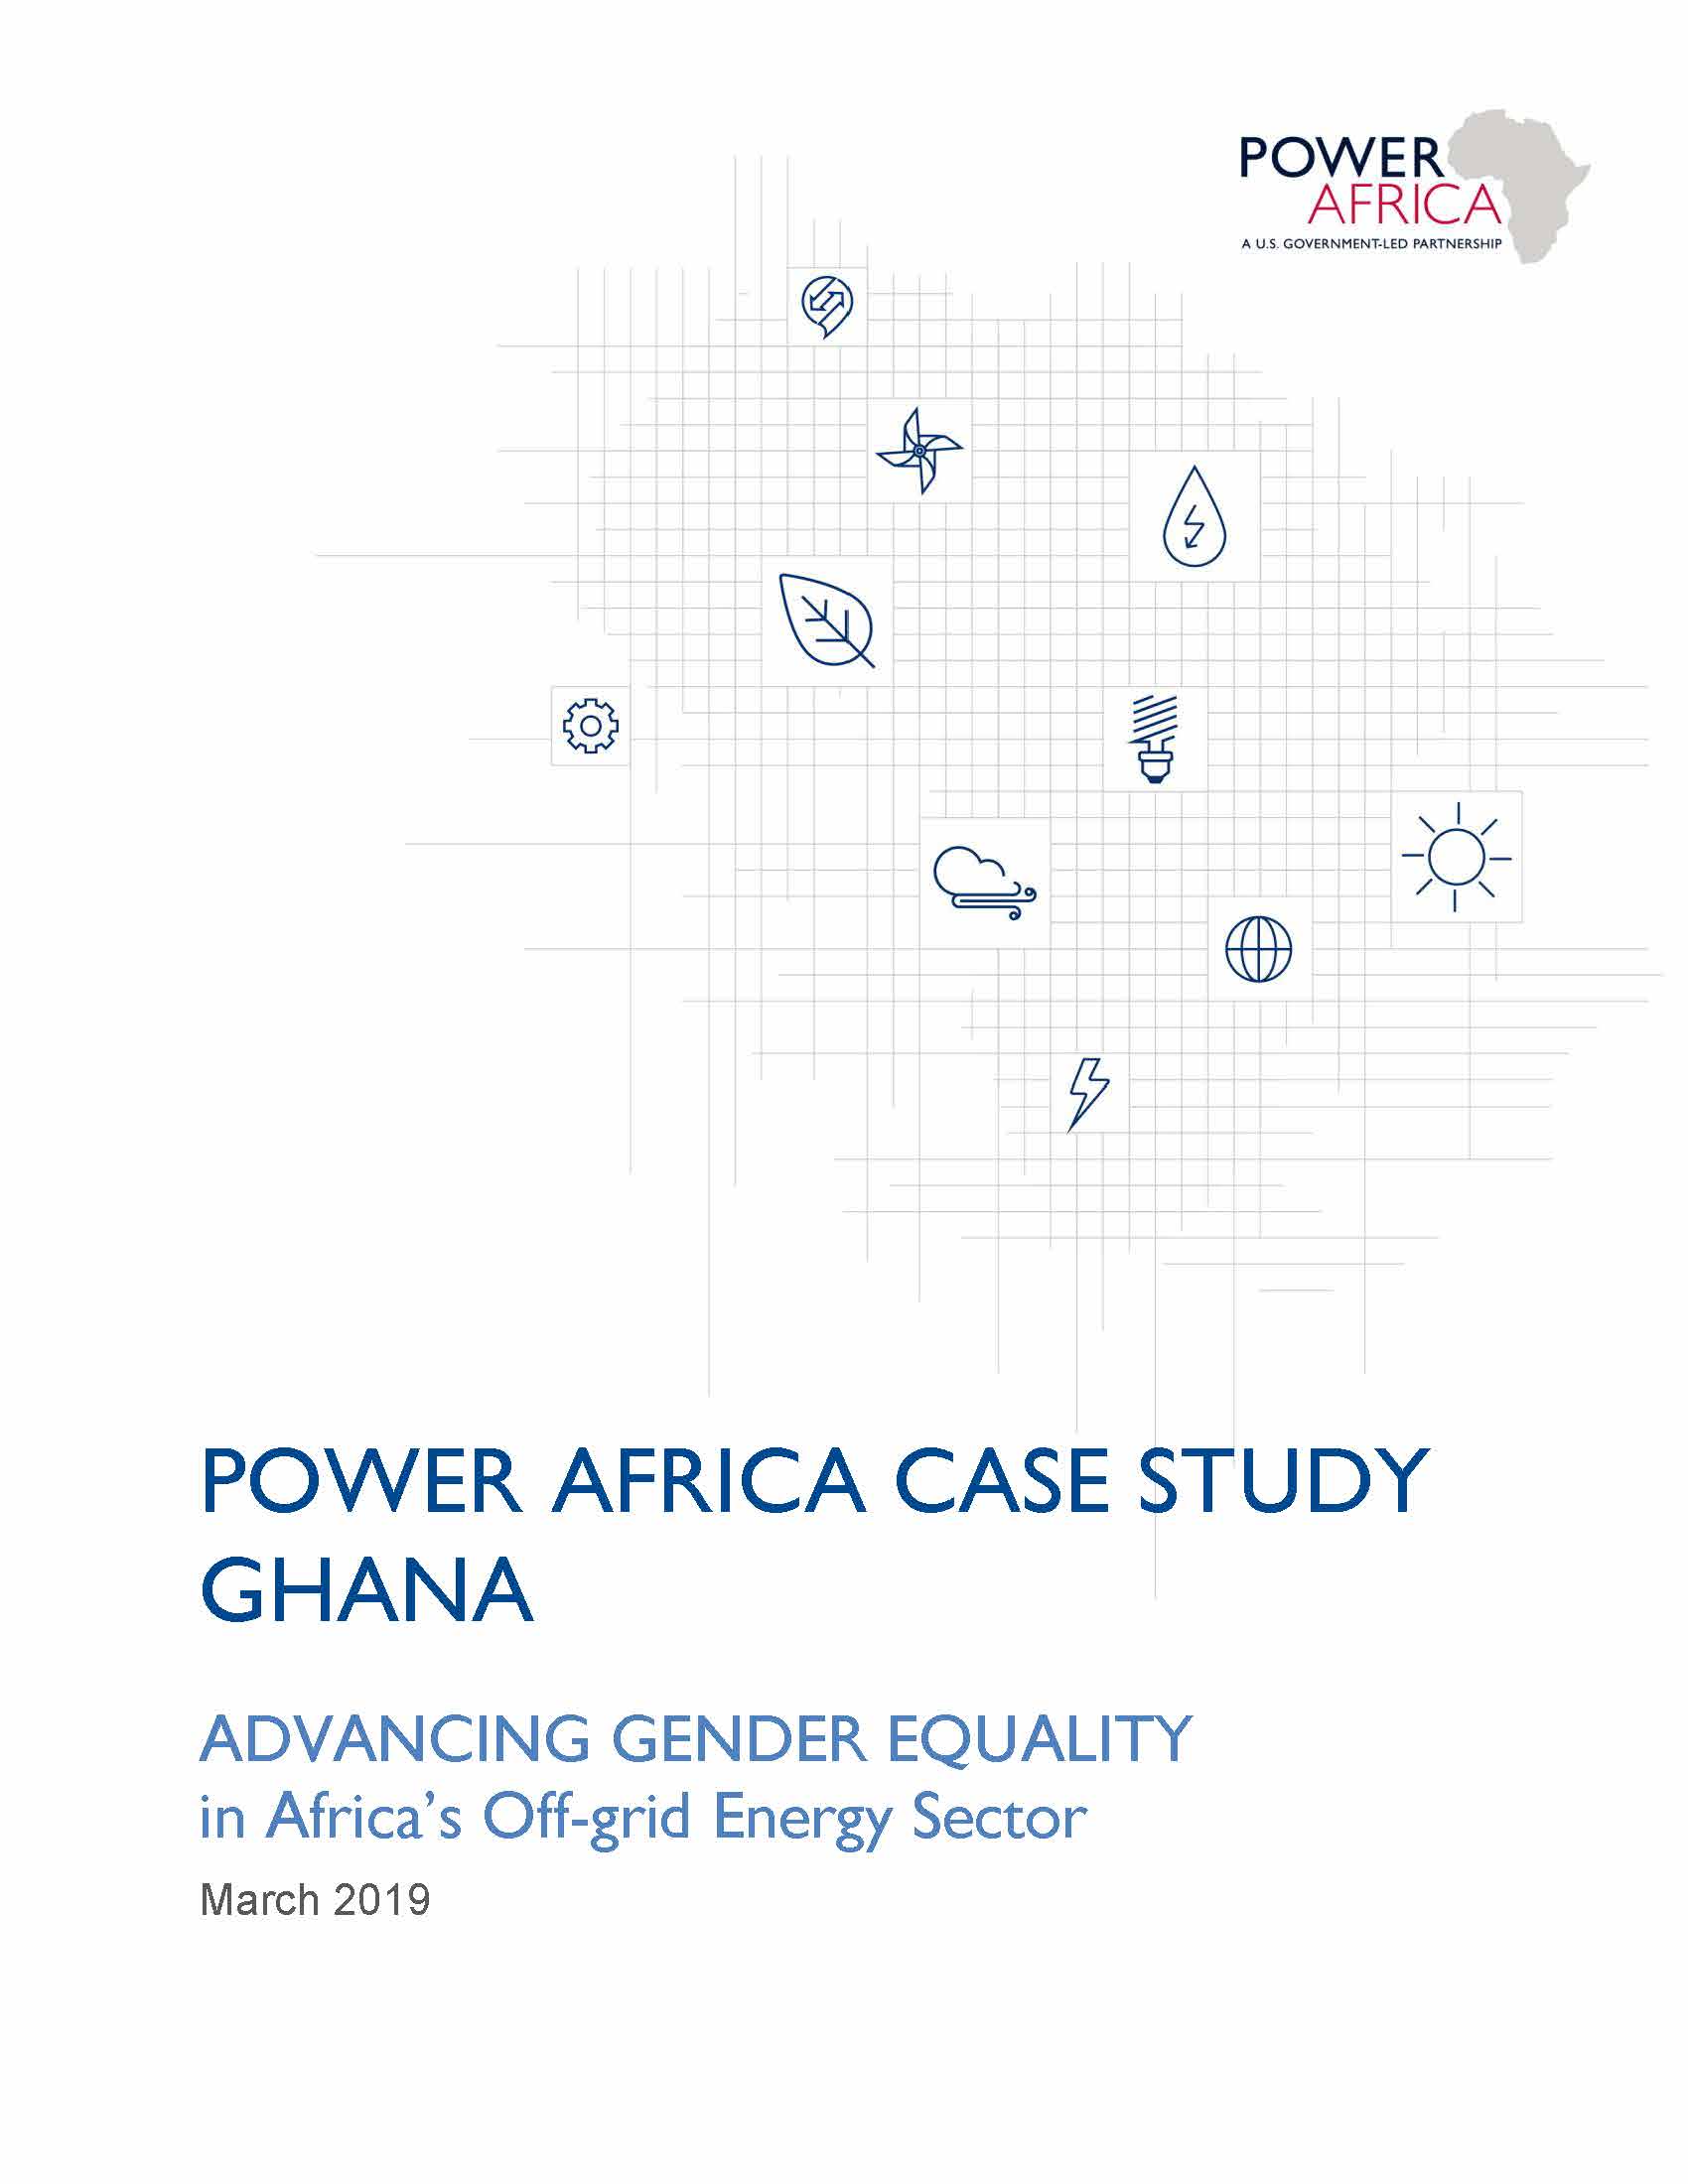 Power Africa BTG Case Study